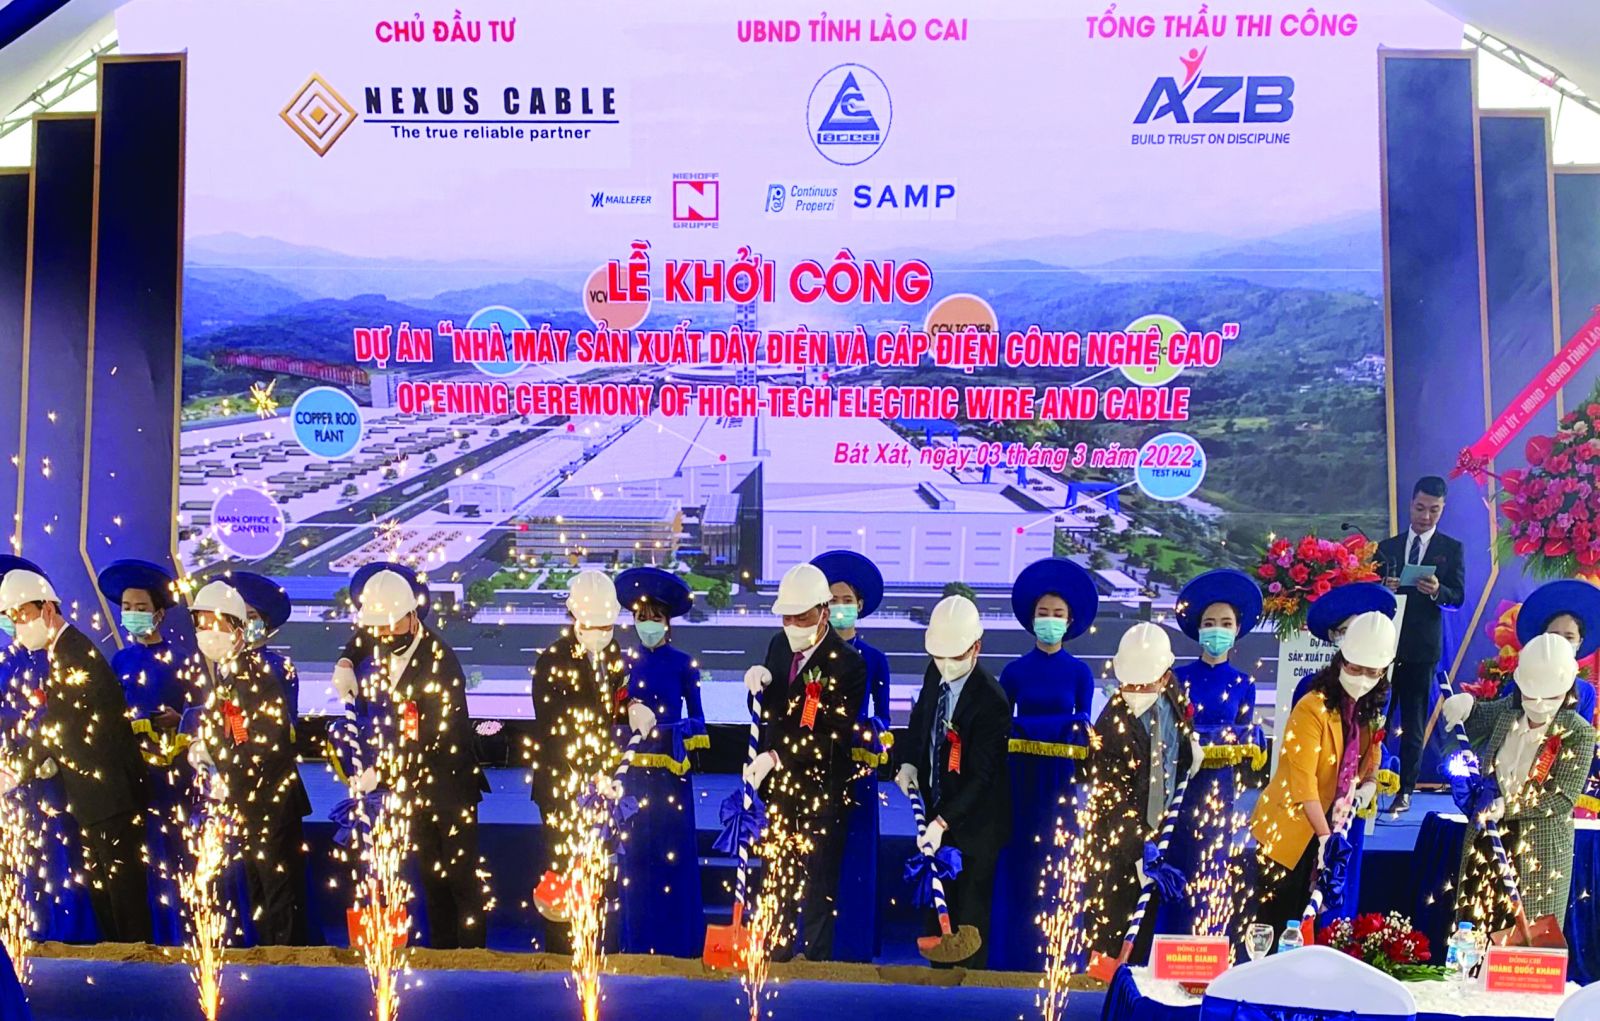  Tại thôn Tân Hồng xã Bản Qua huyện Bát Xát tỉnh Lào Cai đã diễn ra Lễ khởi công dự án Nhà máy sản xuất dây điện và cáp điện công nghệ cao.